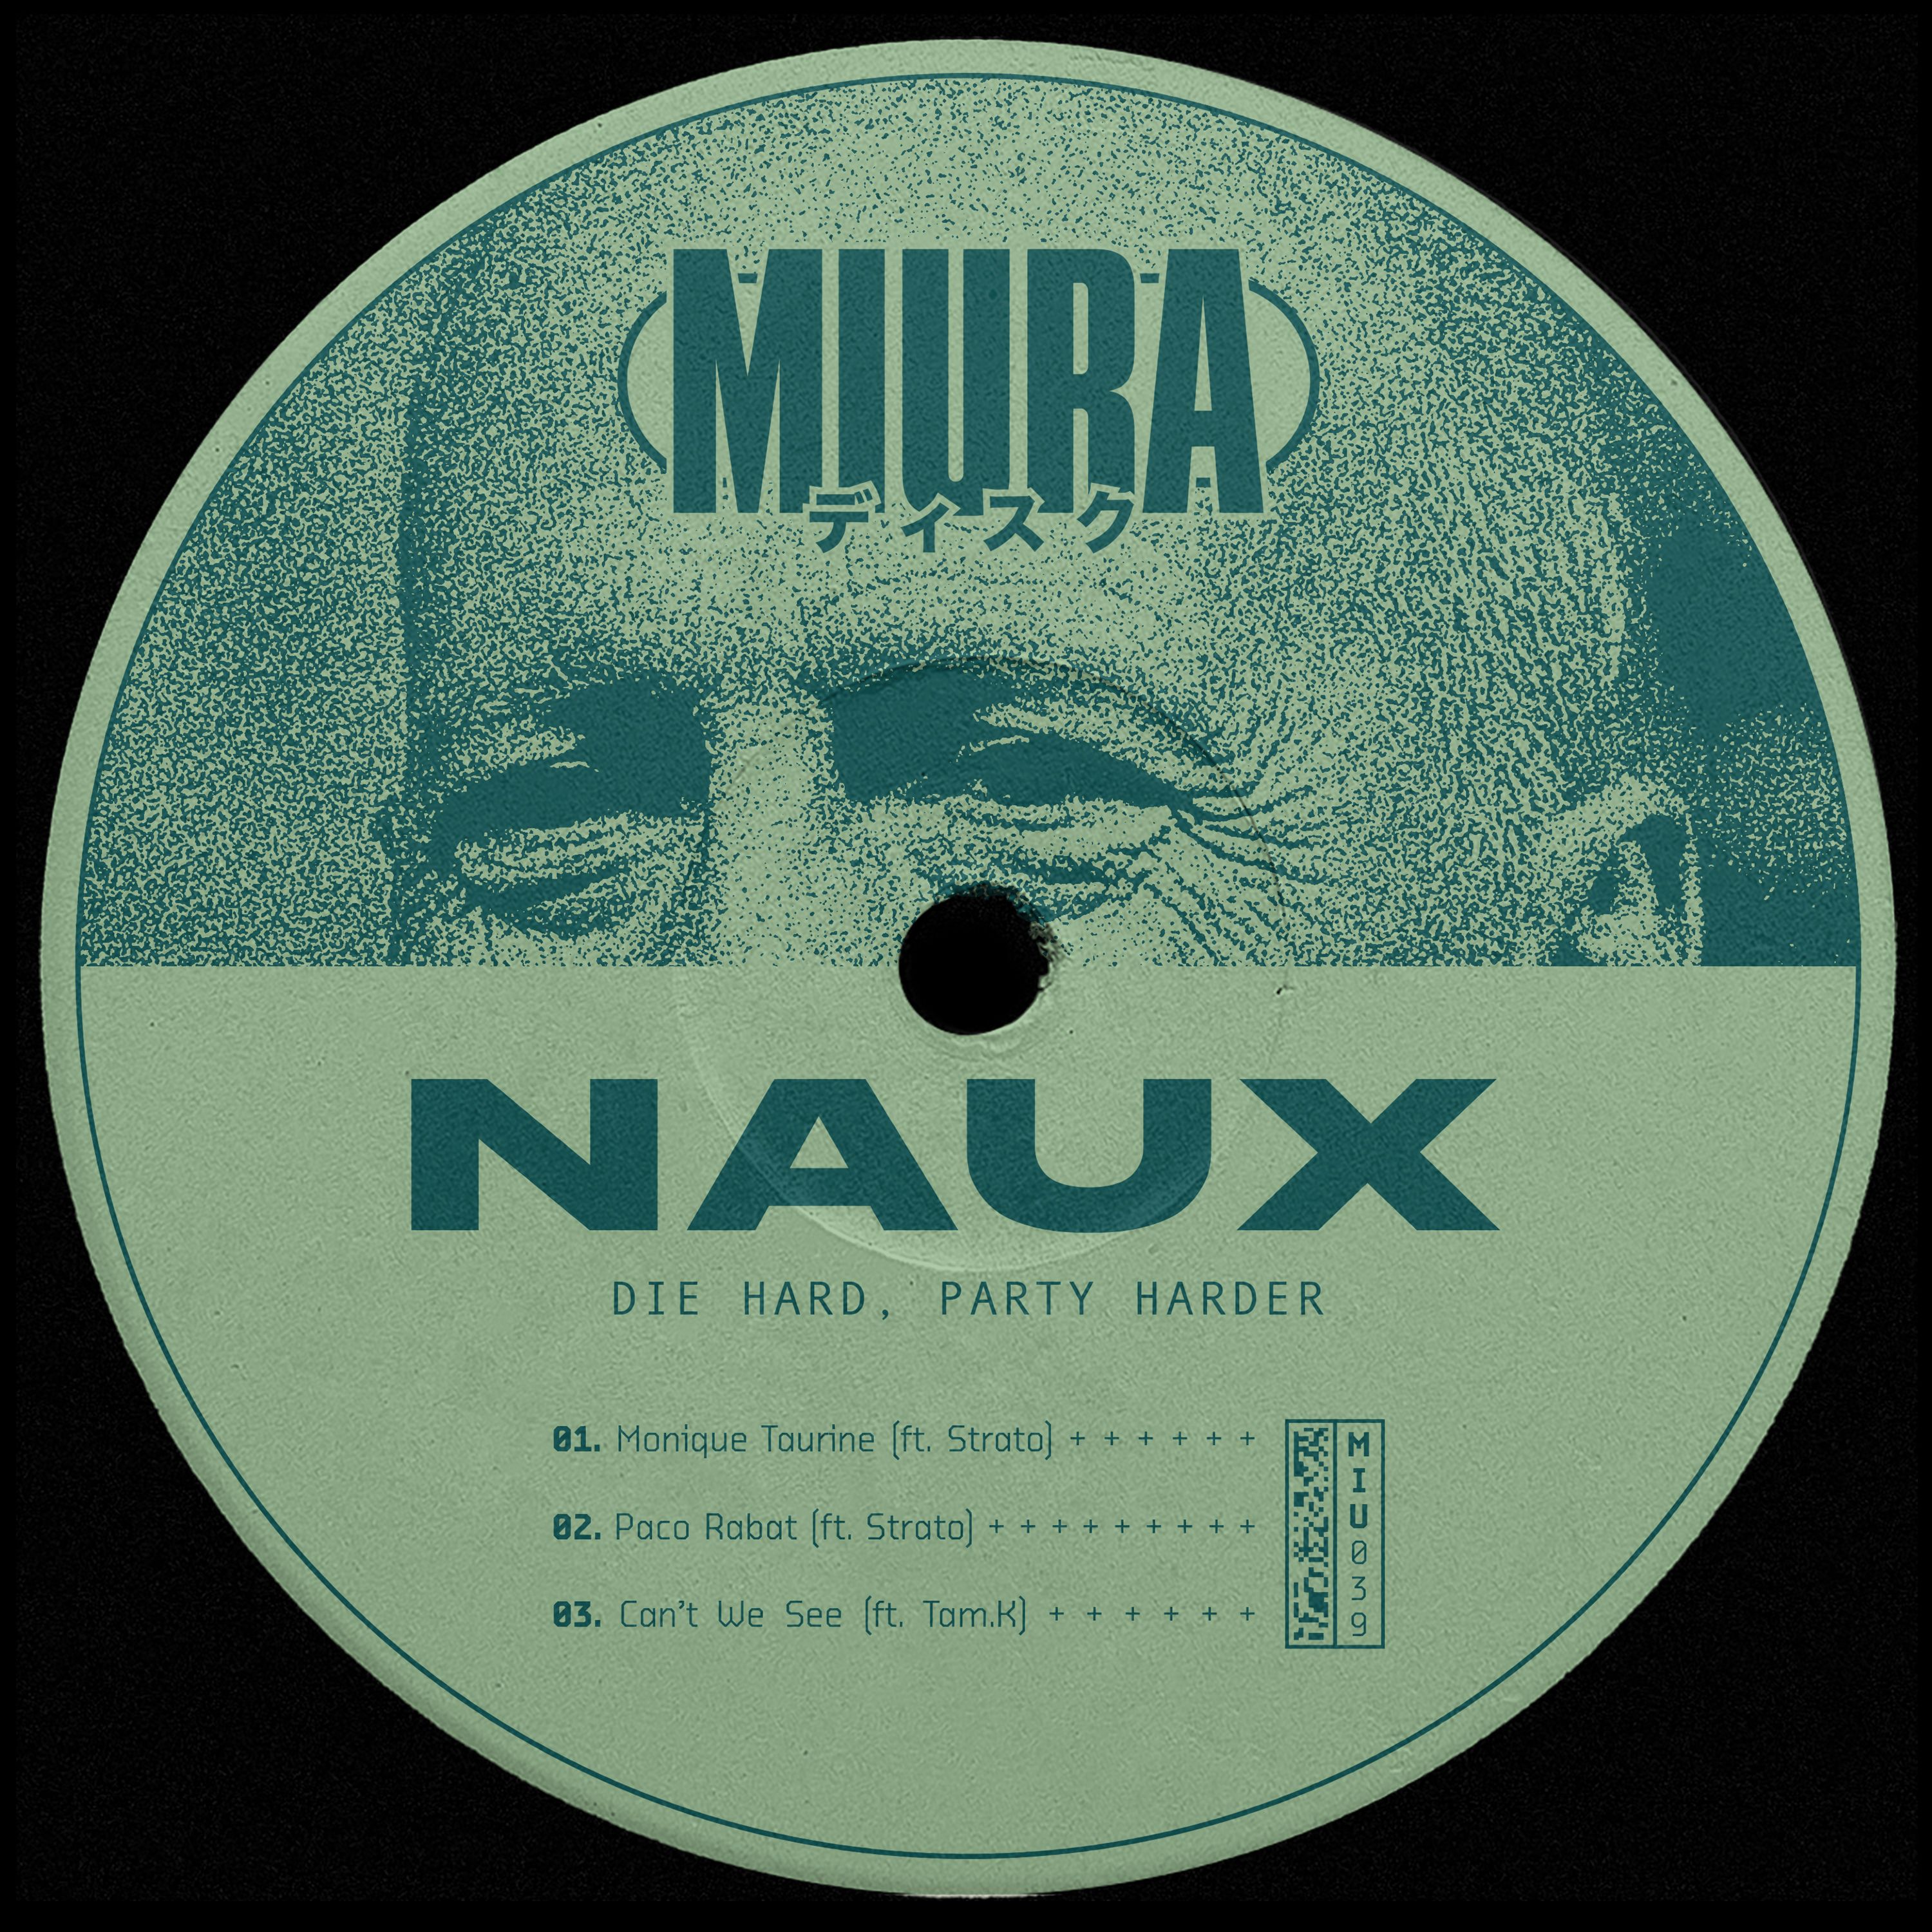 ဒေါင်းလုပ် PREMIERE: Naux & Strato - Monique Taurine [Miura Records]